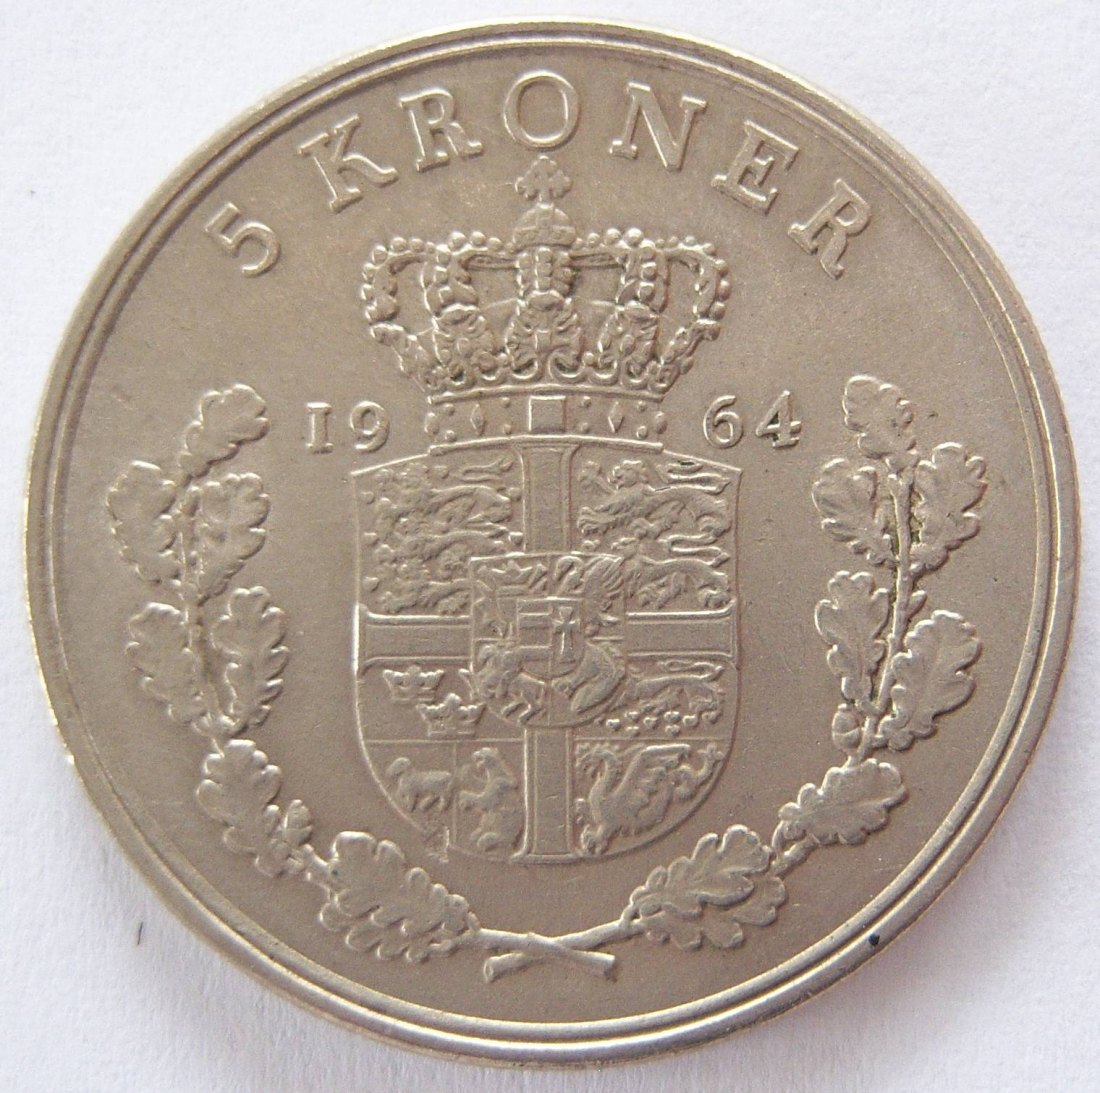  Dänemark 5 Kroner Kronen 1964   